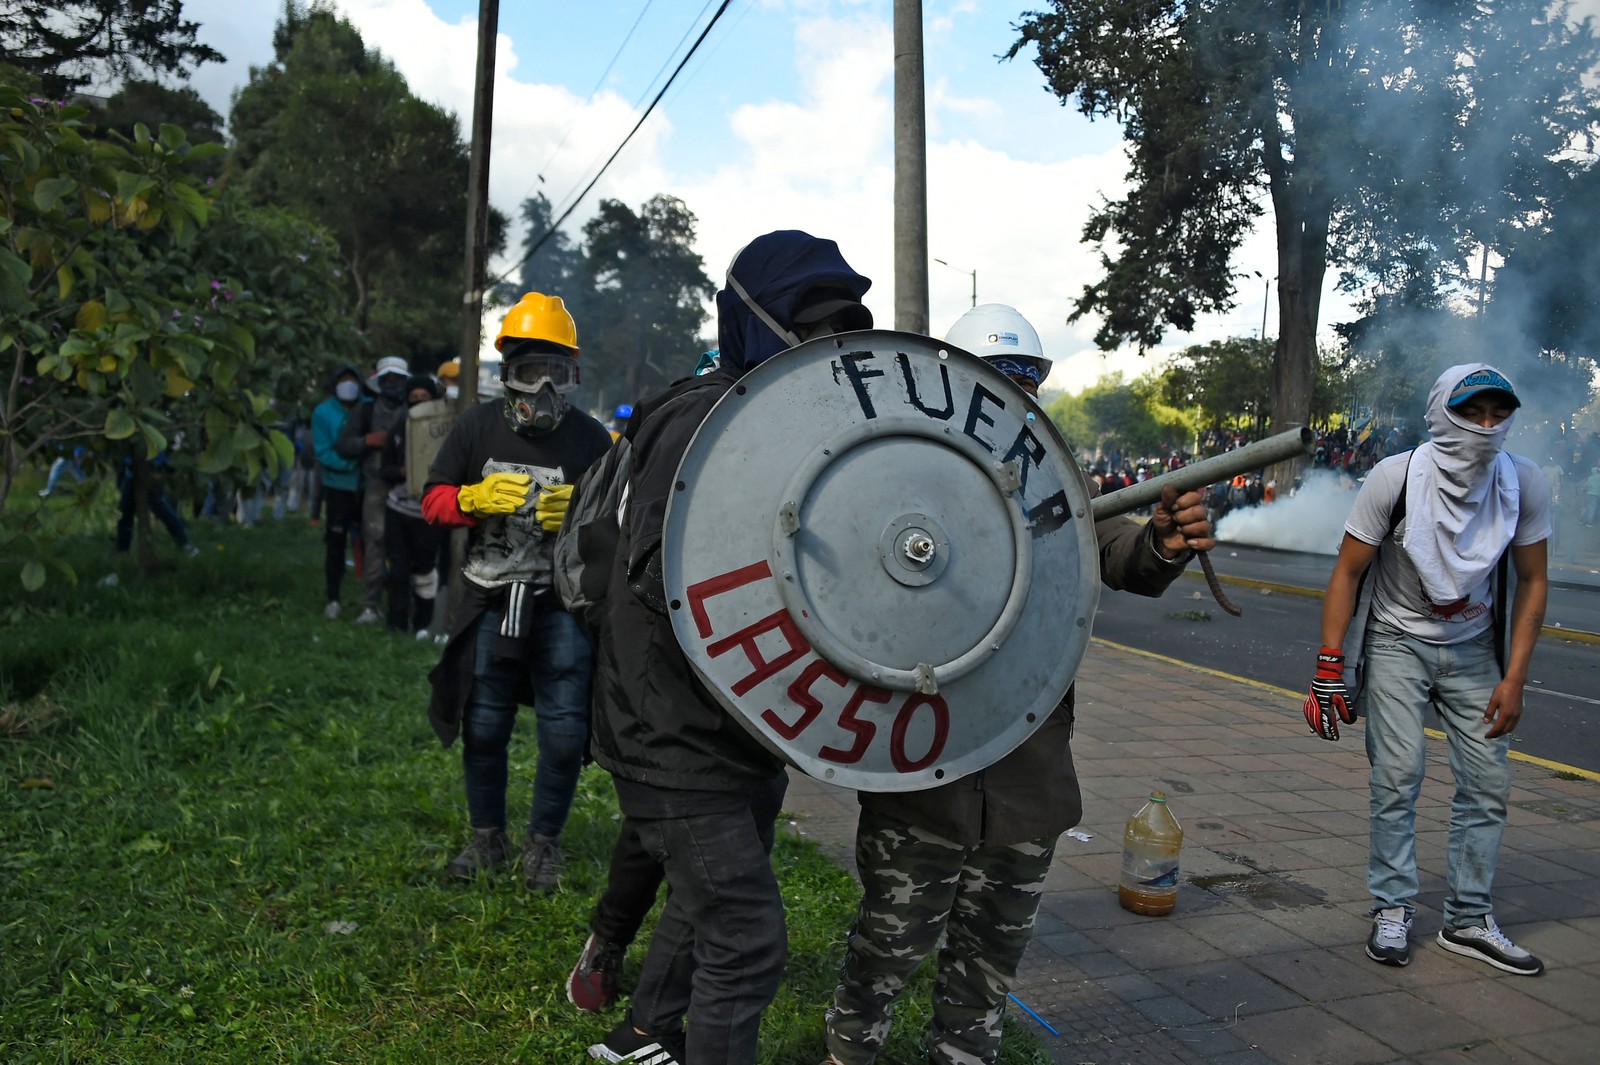 Manifestantes entram em confronto com a polícia com um escudo improvisado onde se lê "Fora Lasso", referindo-se ao presidente equatoriano Guillermo Lasso, no parque El Arbolito, em Quito — Foto: RODRIGO BUENDIA / AFP